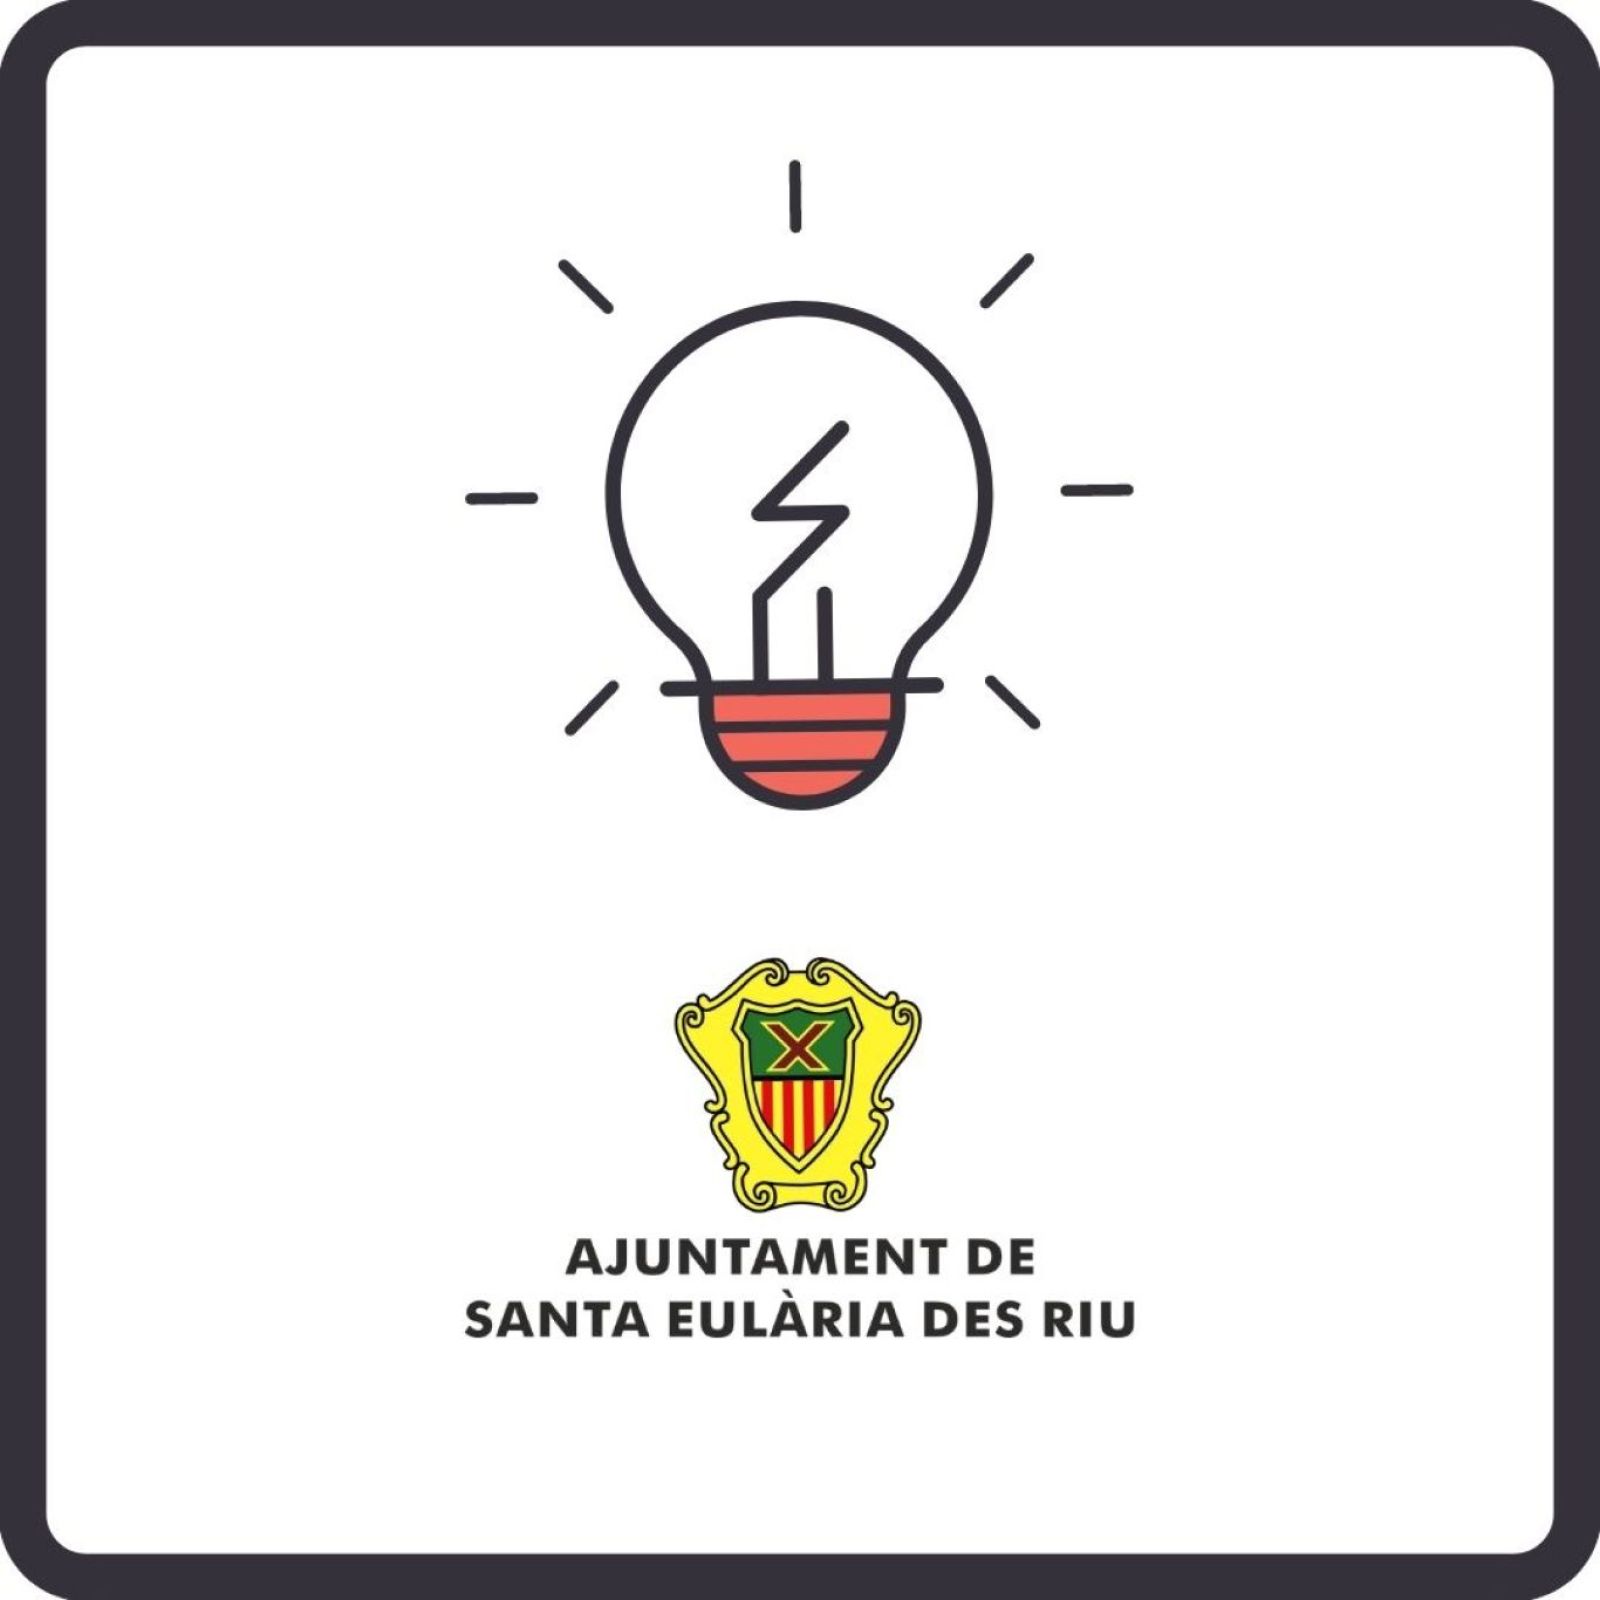 Corte temporal del suministro de energía eléctrica en diferentes zonas de Santa Eulària des Riu el día 22 de diciembre